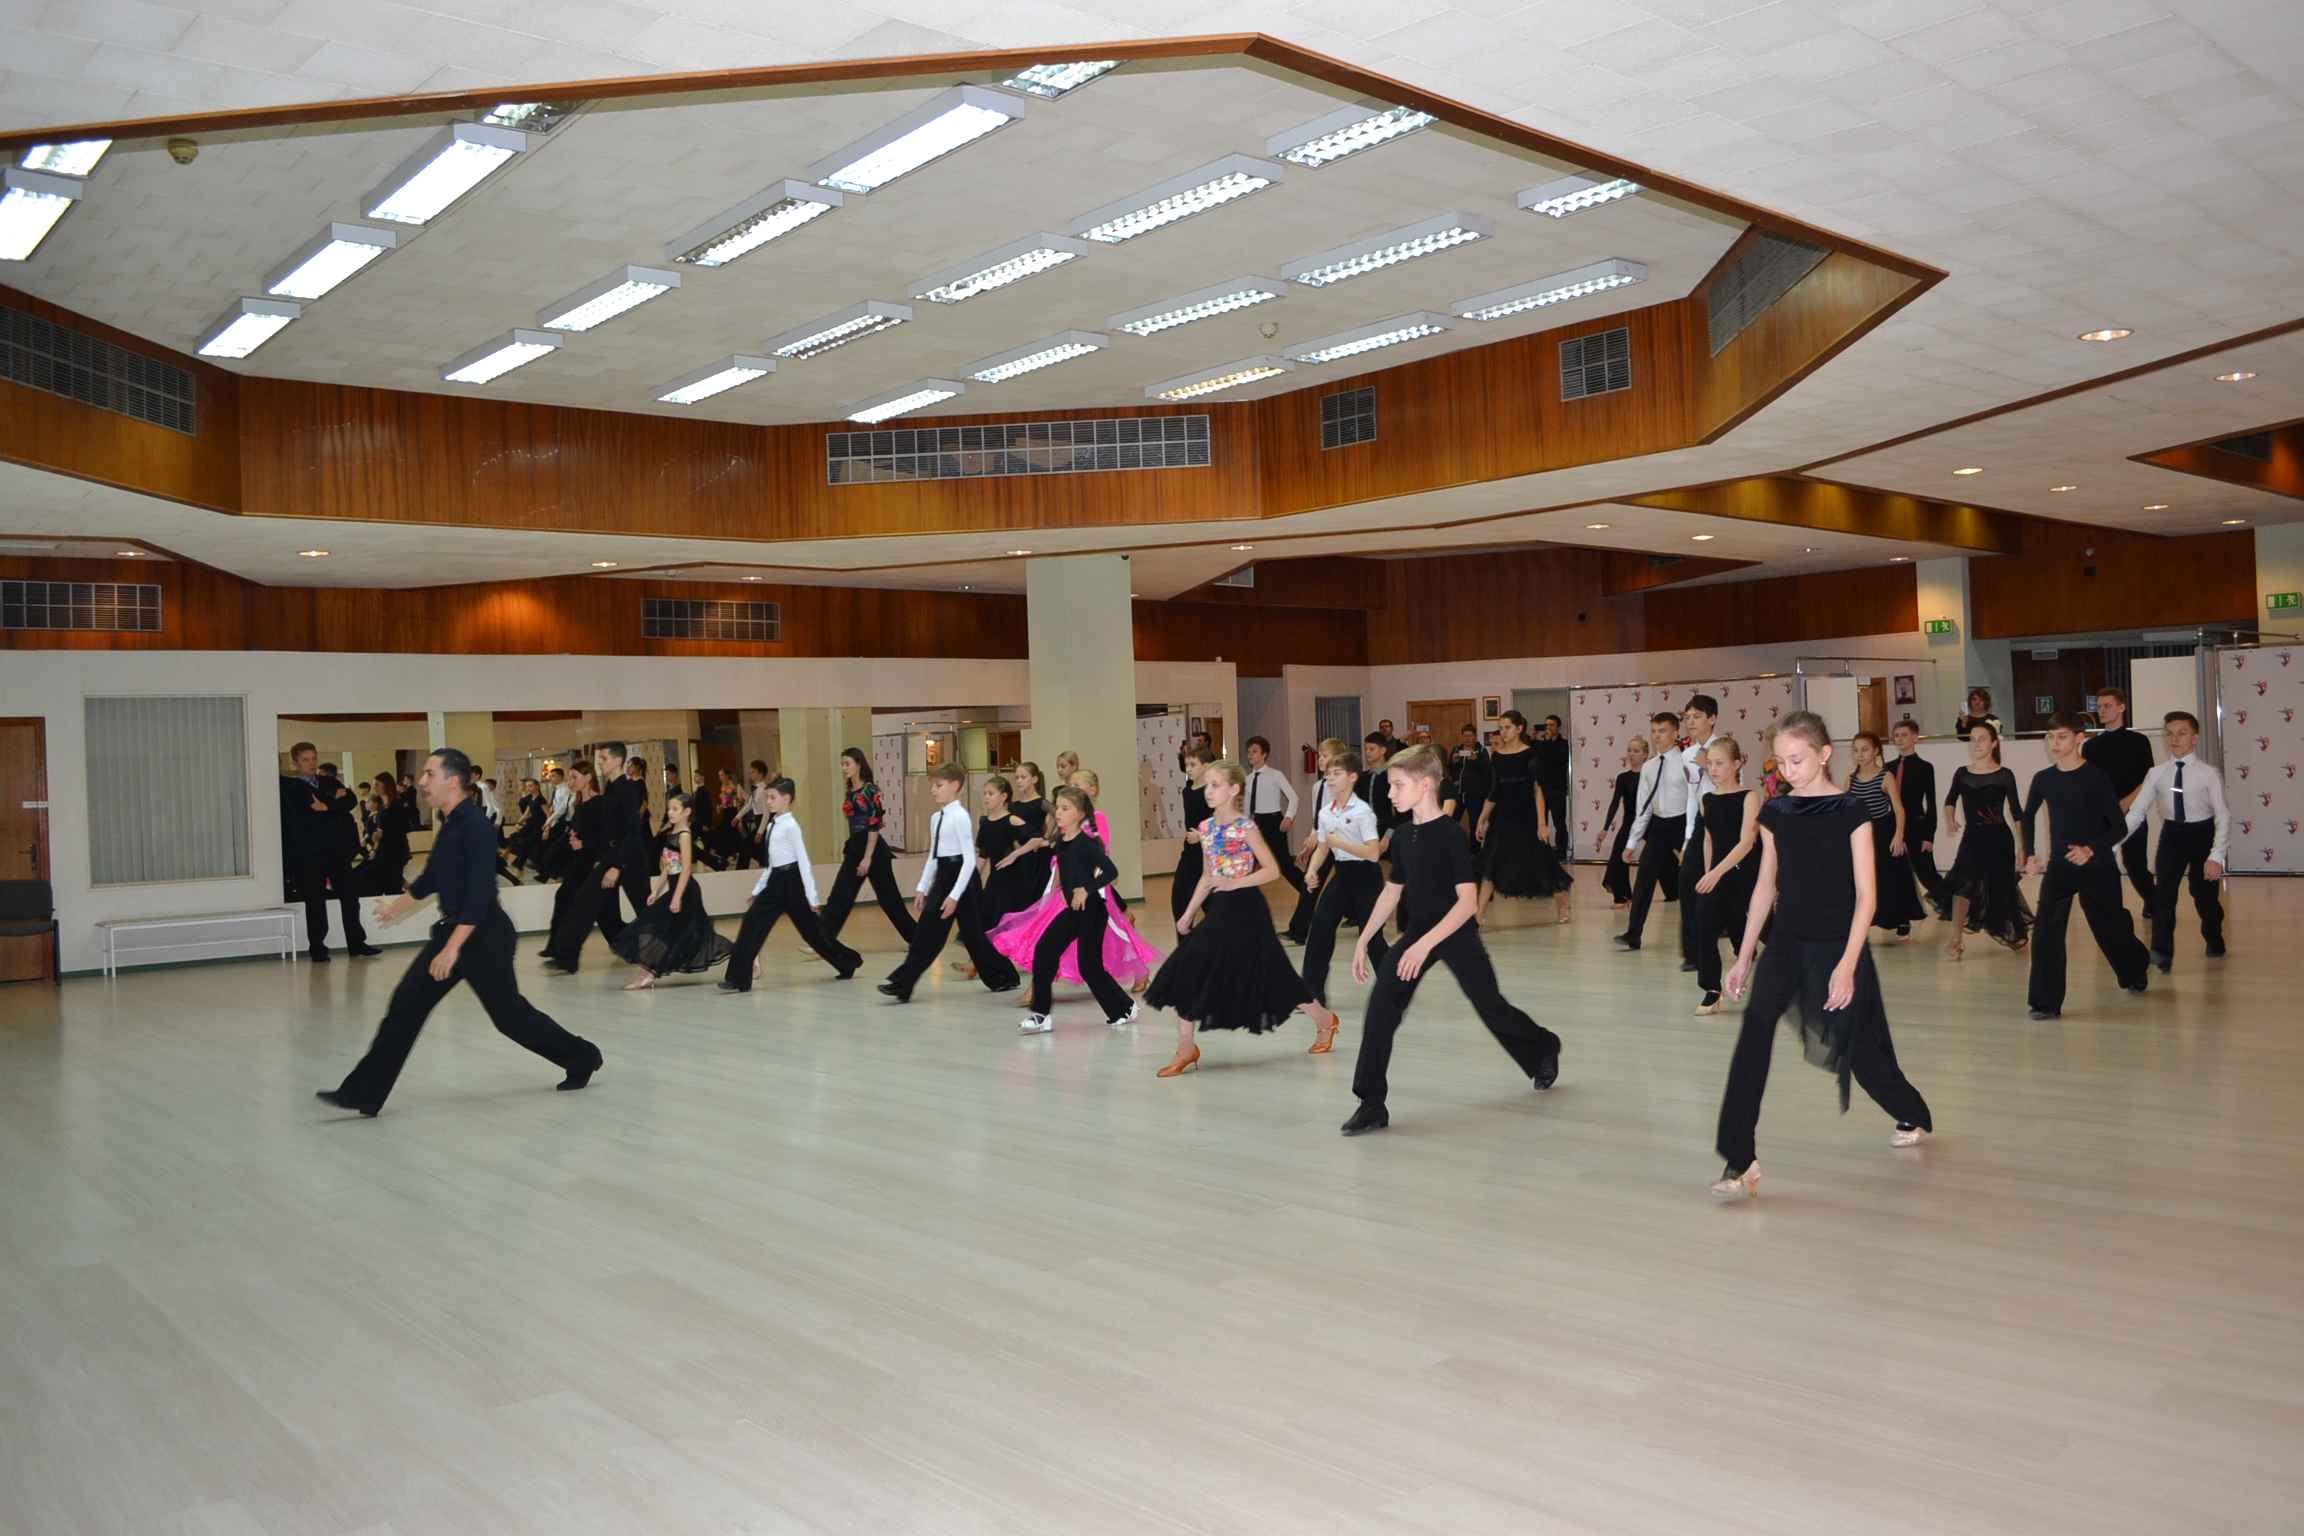 танцы для детей и взрослых на Преображенской и Черкизовской | Ритм танца -  это пульс жизни!